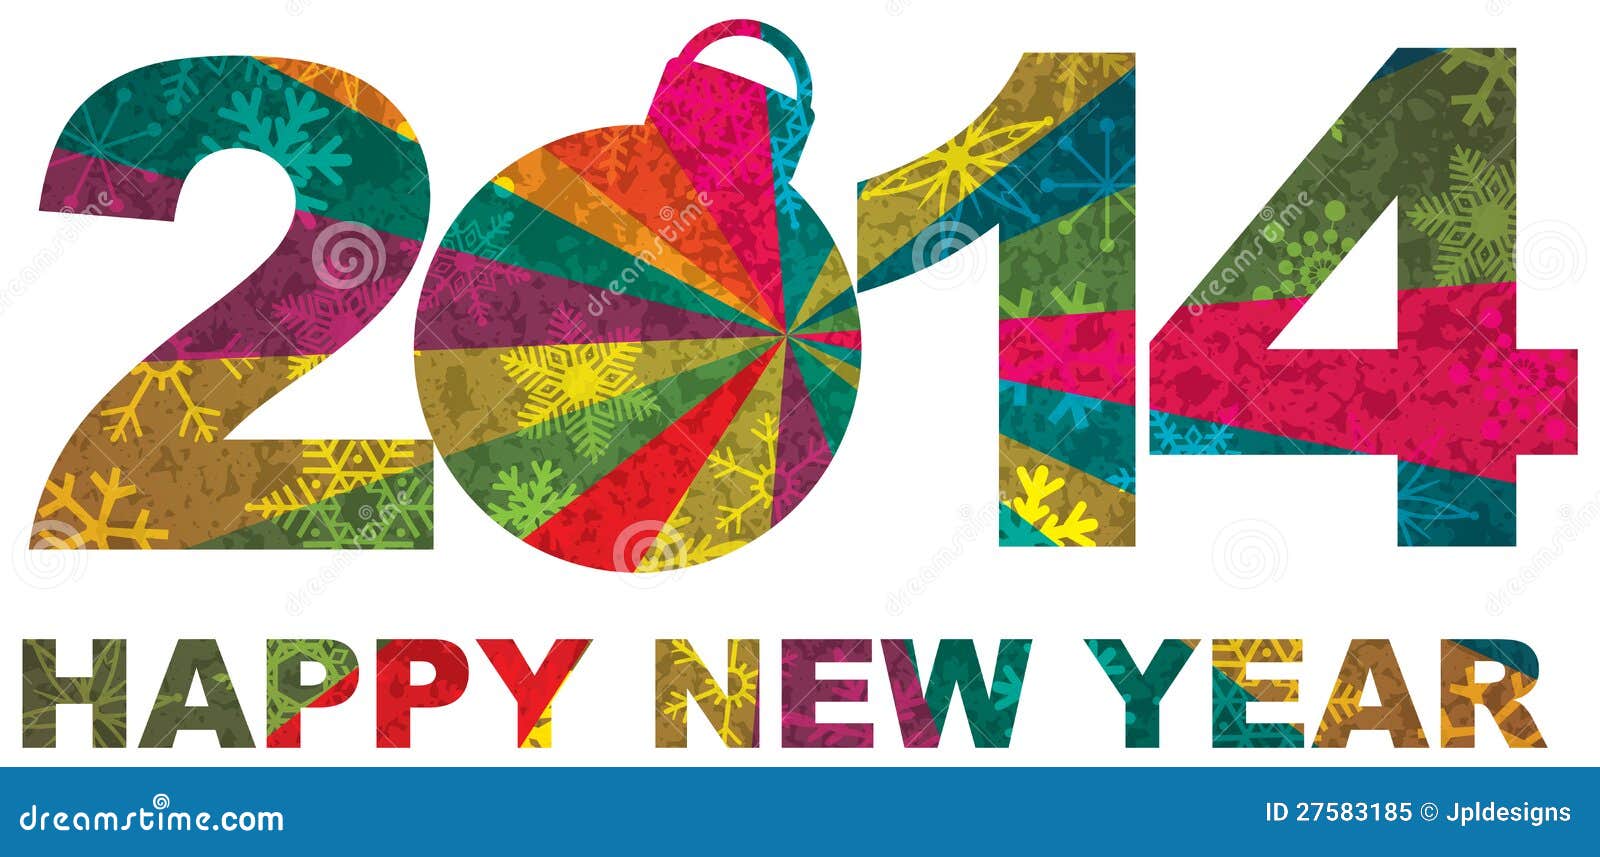 clip art free happy new year 2014 - photo #30